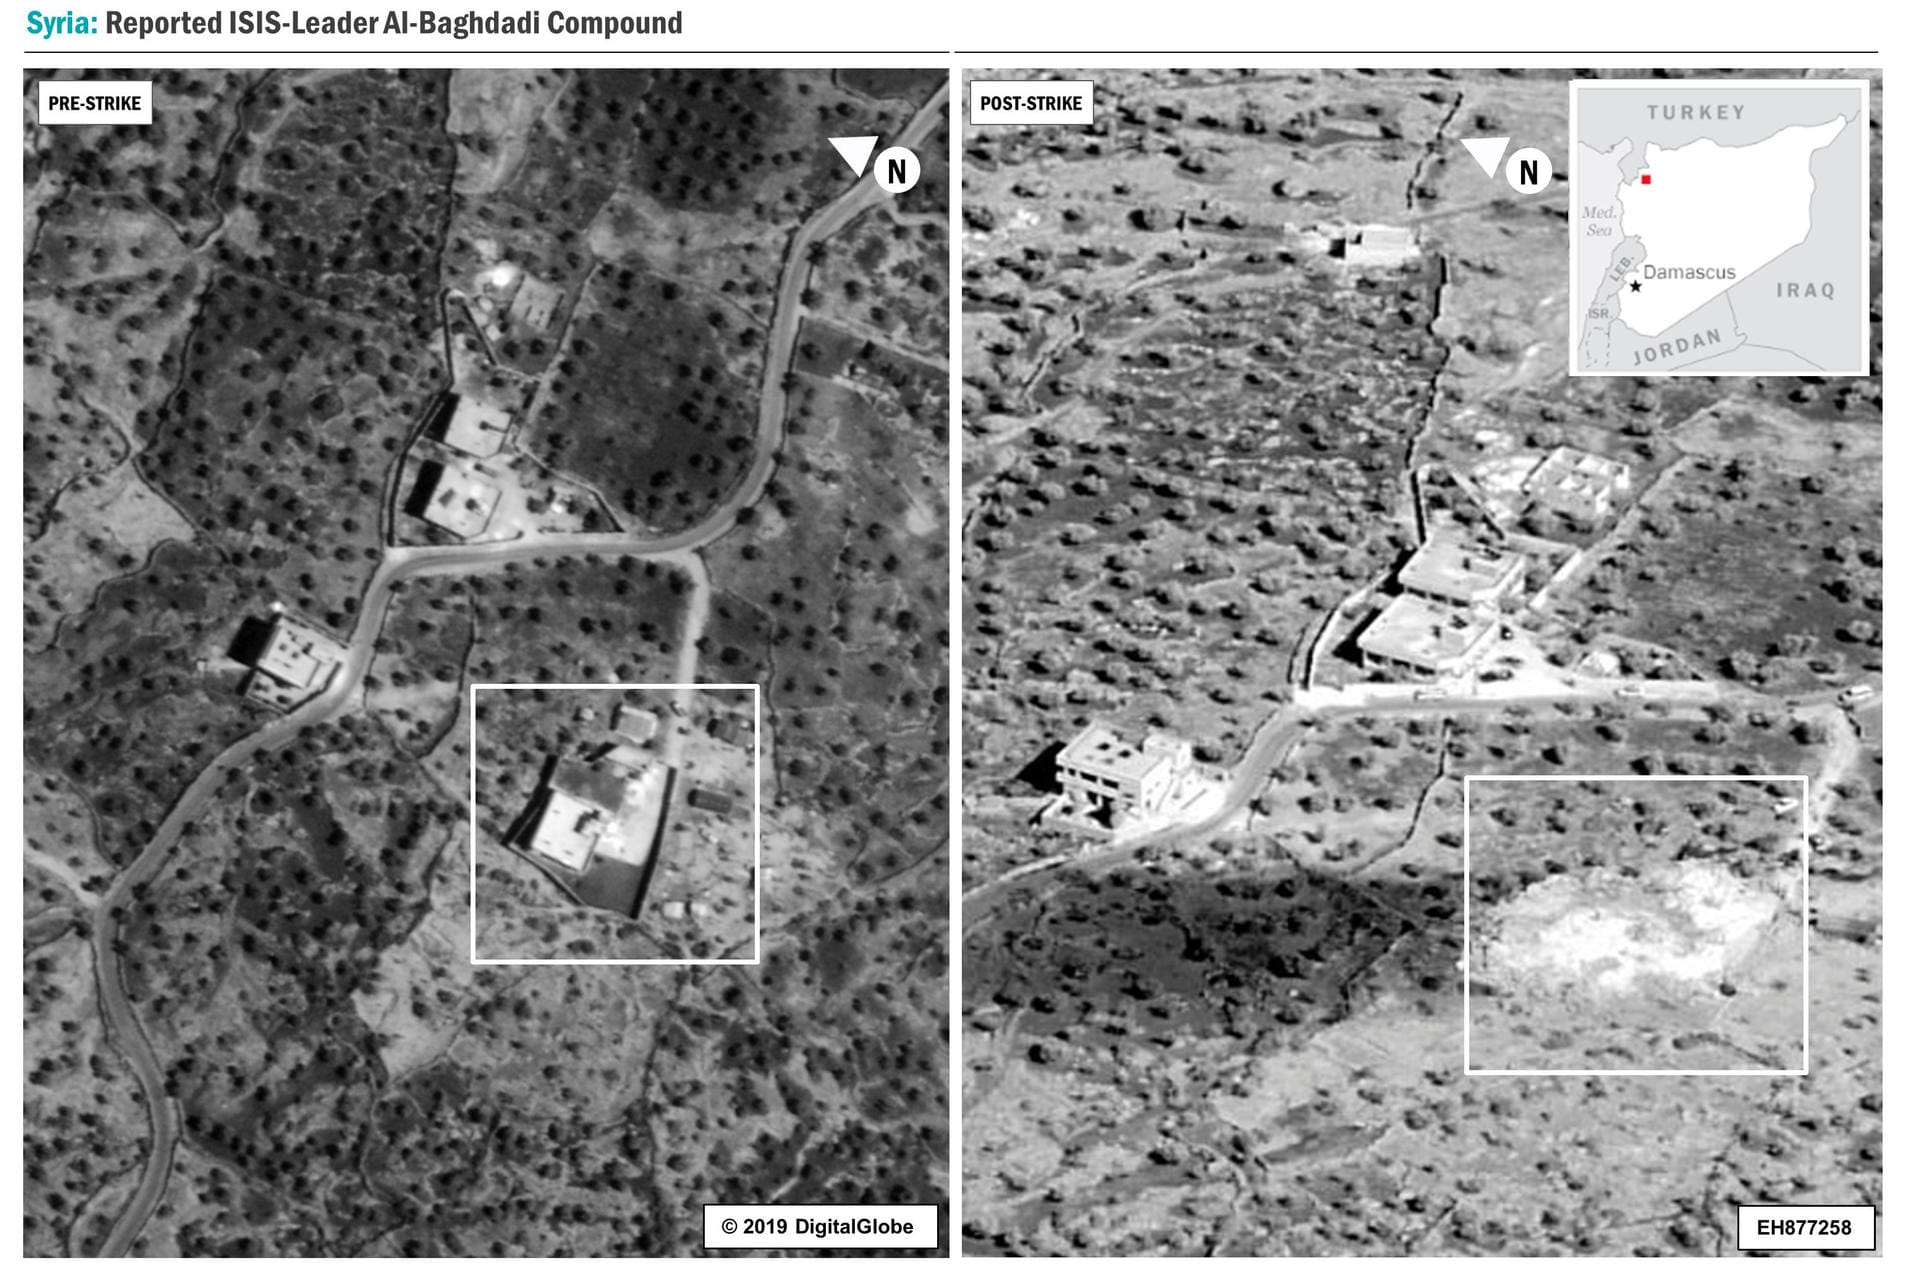 Luftaufnahme aus Syrien: Zwei Bilder zeigen den Aufenthaltsort von al-Bagdadi vor und nach dem Militäreinsatz.